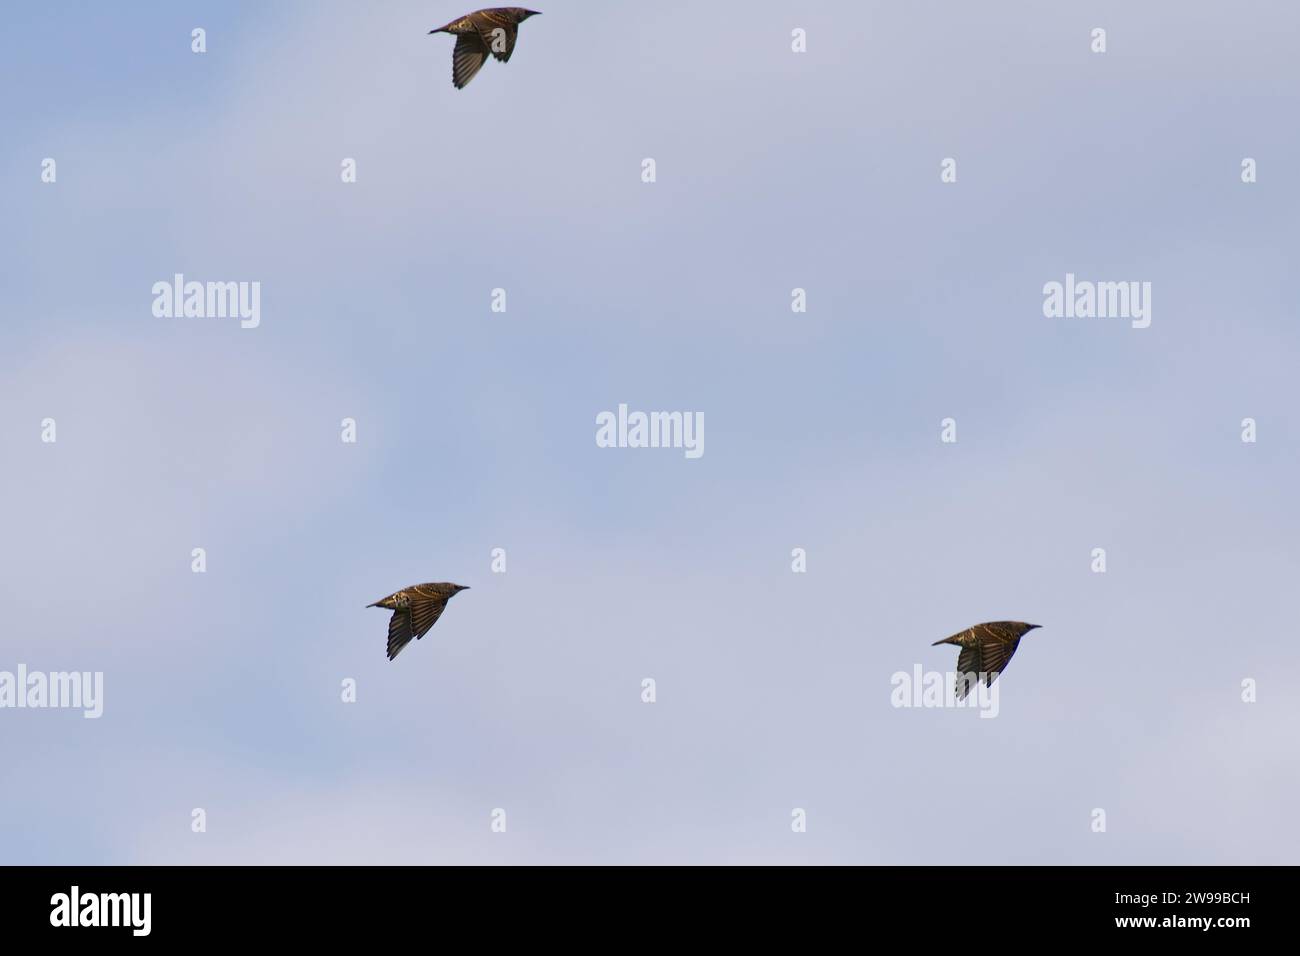 Die drei Vögel fliegen in einer Linienformation, die gemeinsam durch den Himmel fliegen. Stockfoto